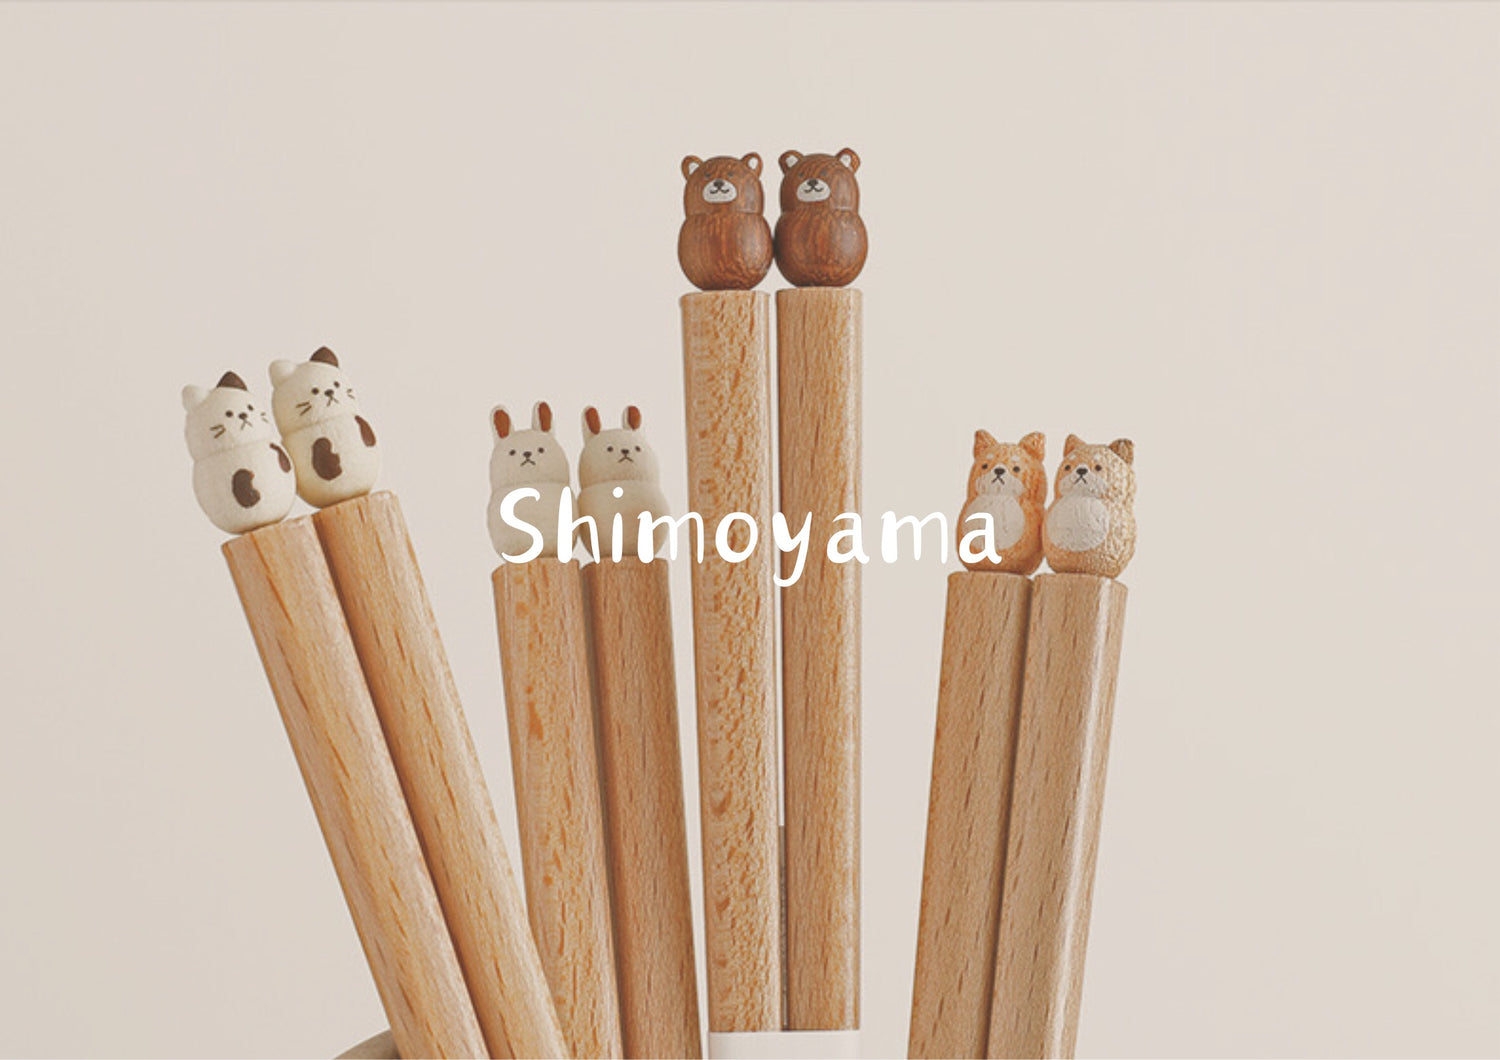 Shimoyama系列